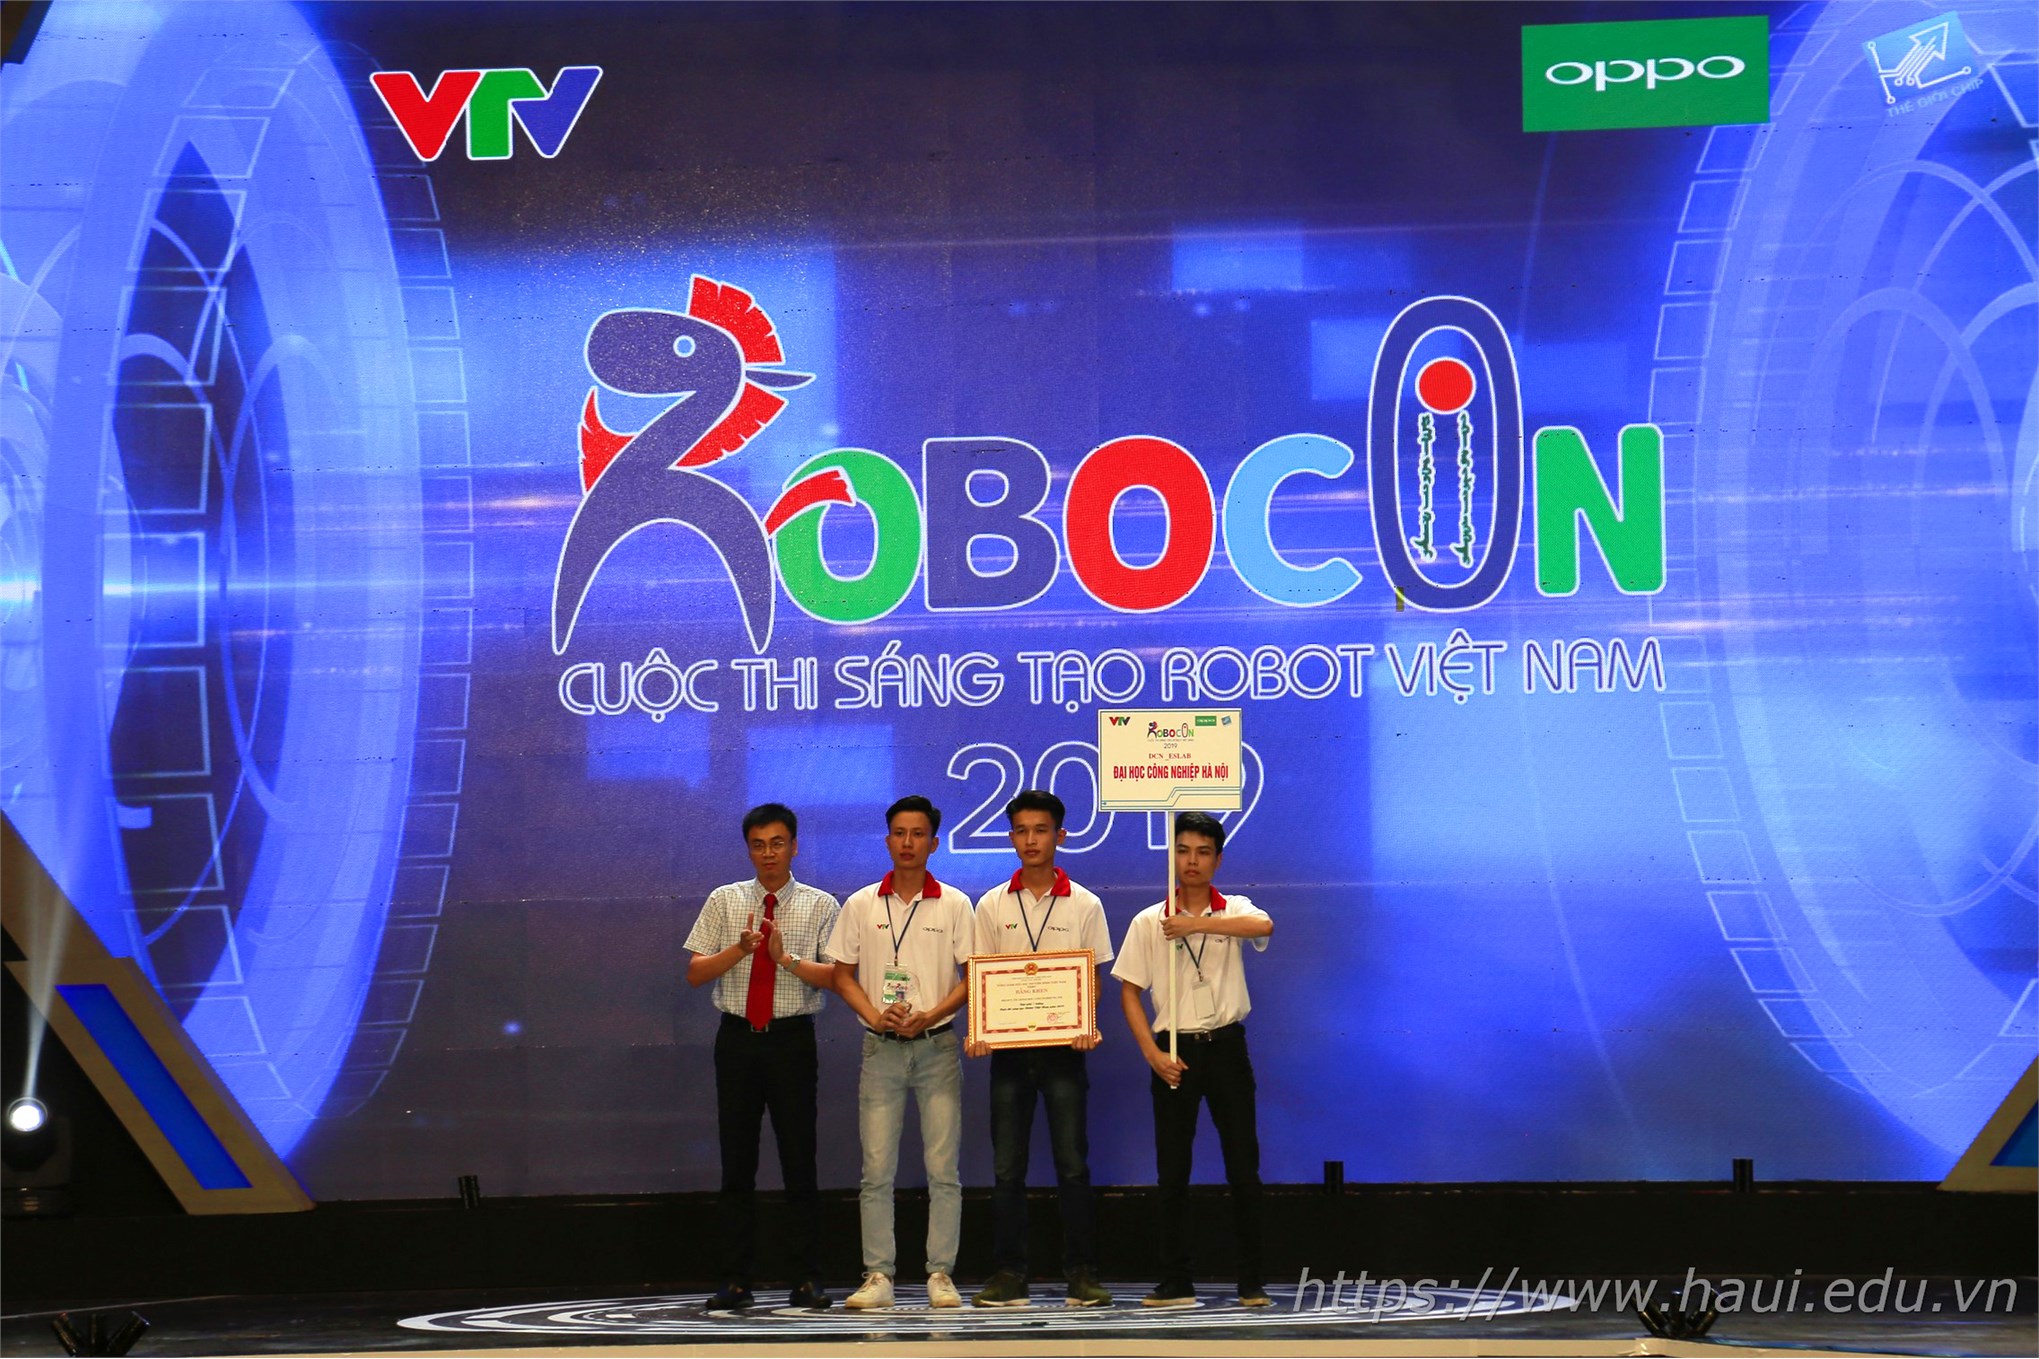 Đại học Công nghiệp Hà Nội giành giải `Đội có ý tưởng sáng tạo nhất` và giải Ba Cuộc thi Sáng tạo Robot Việt Nam 2019